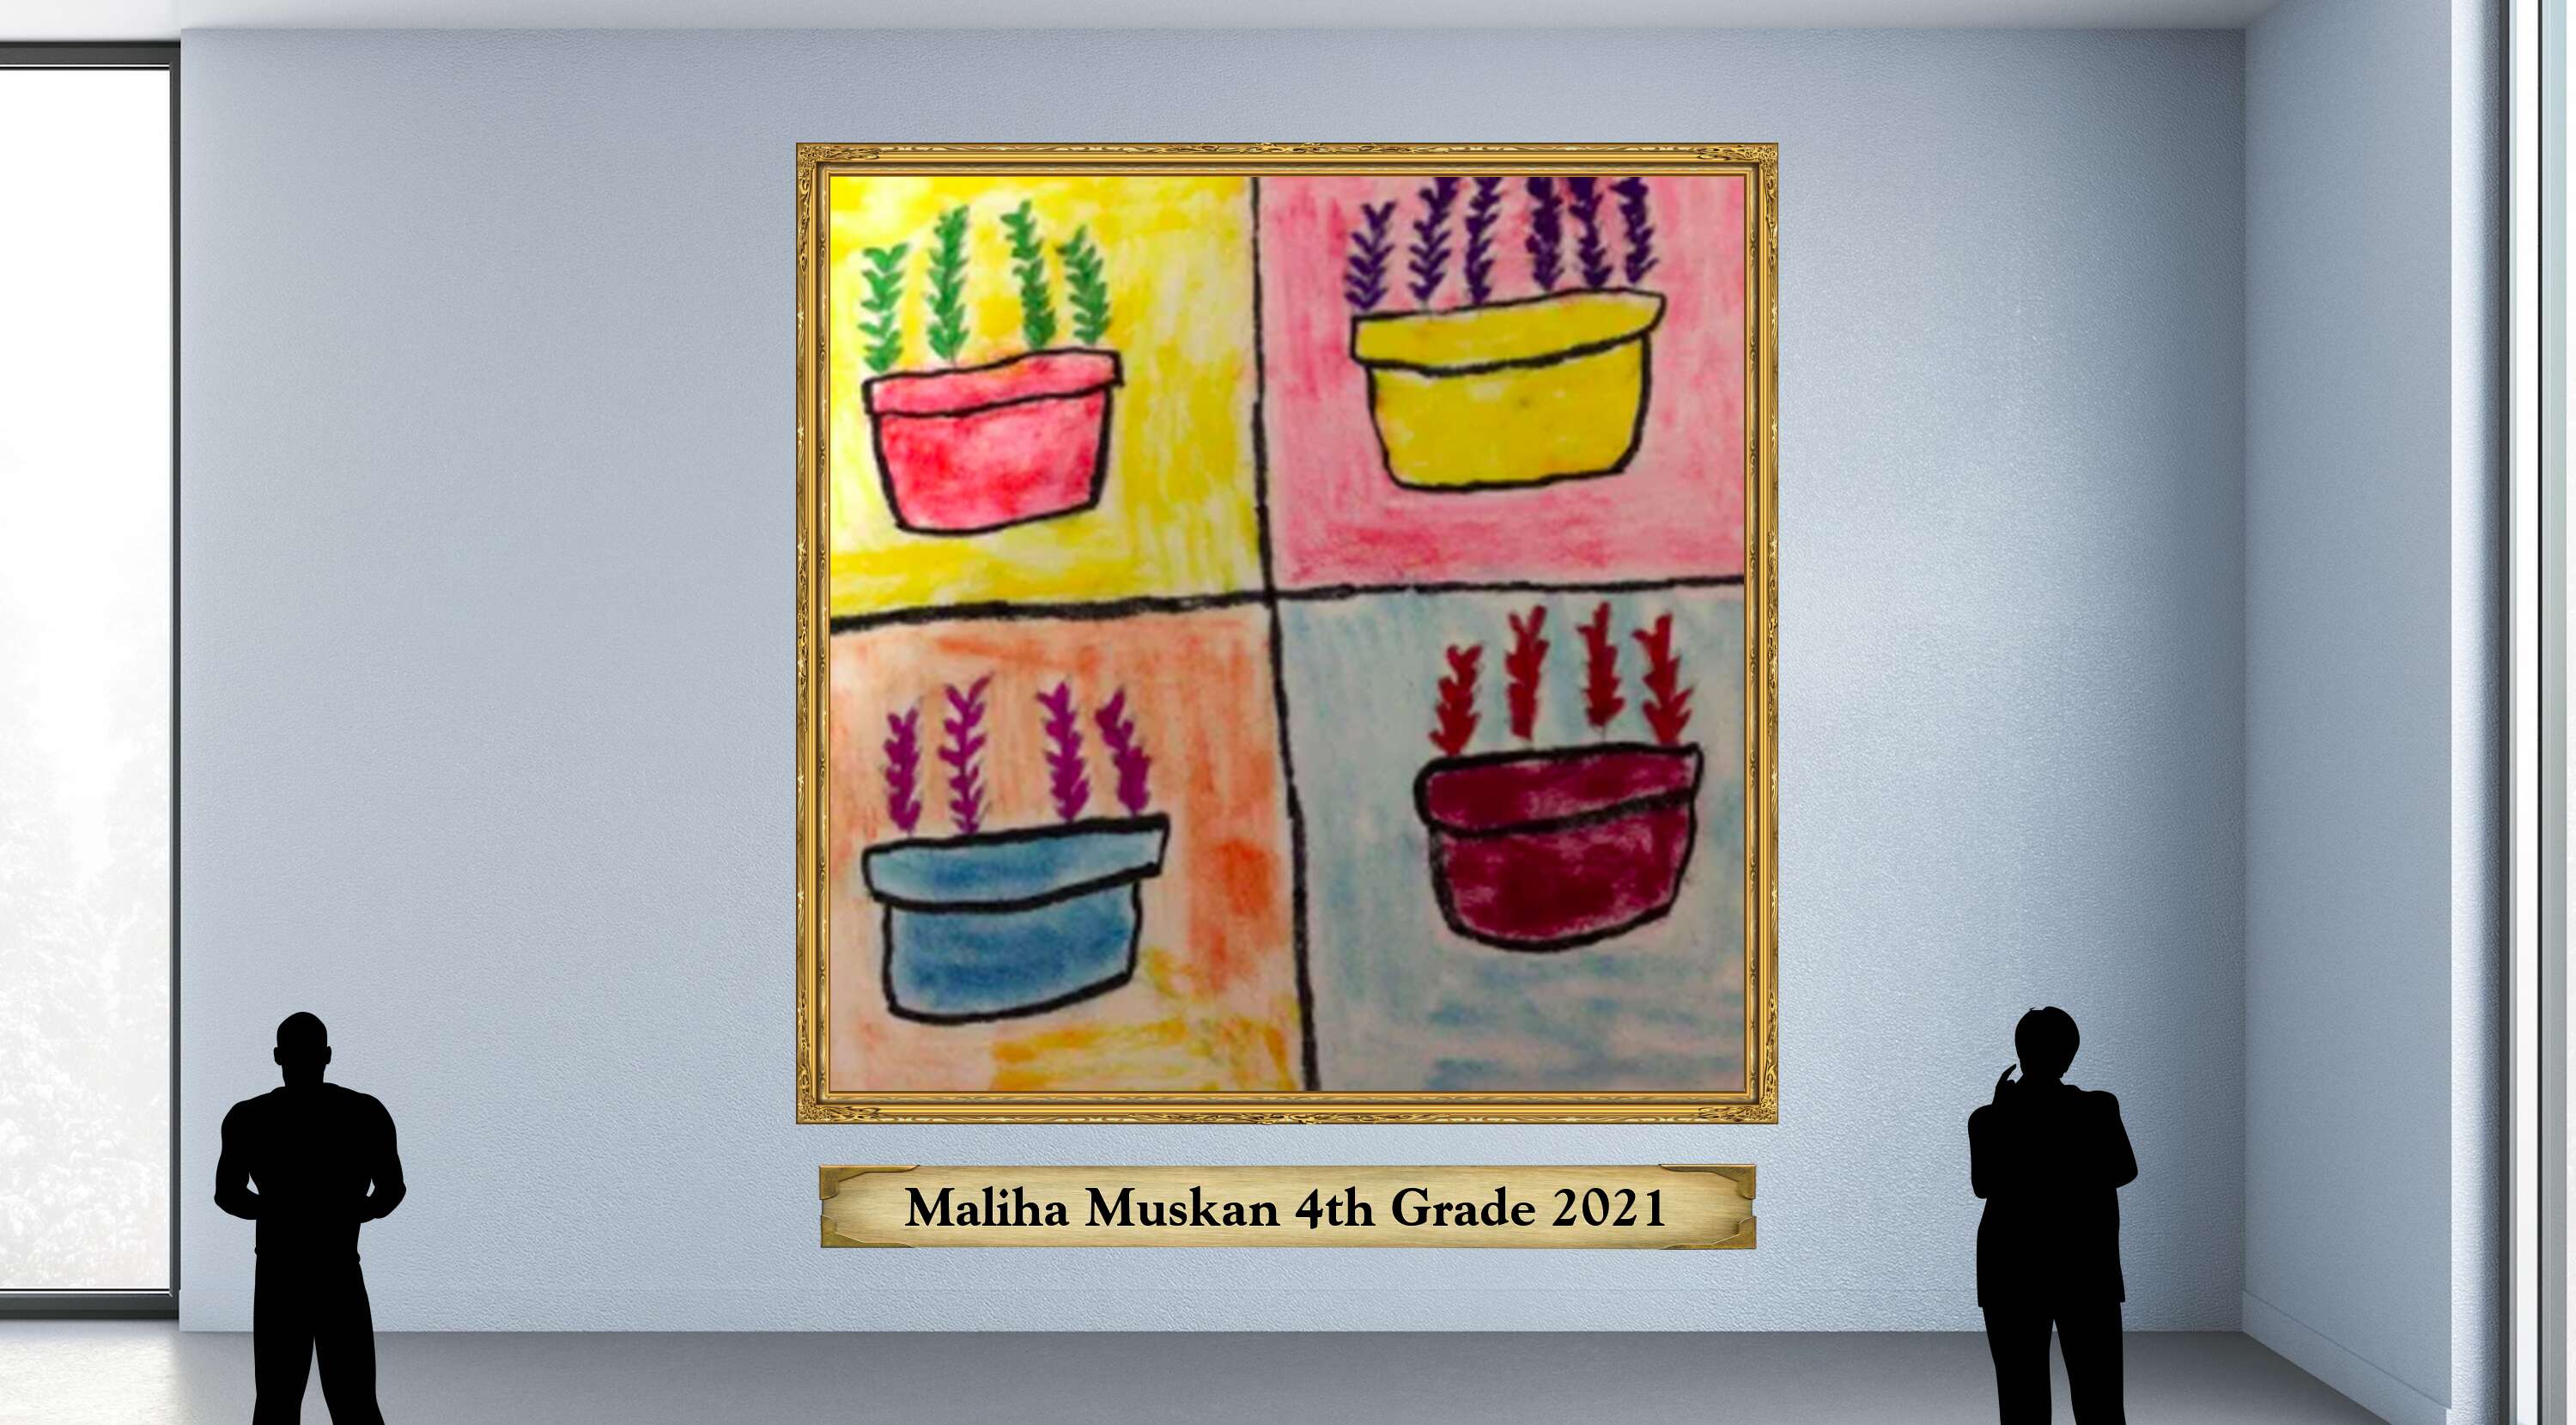 Maliha Muskan 4th Grade 2021